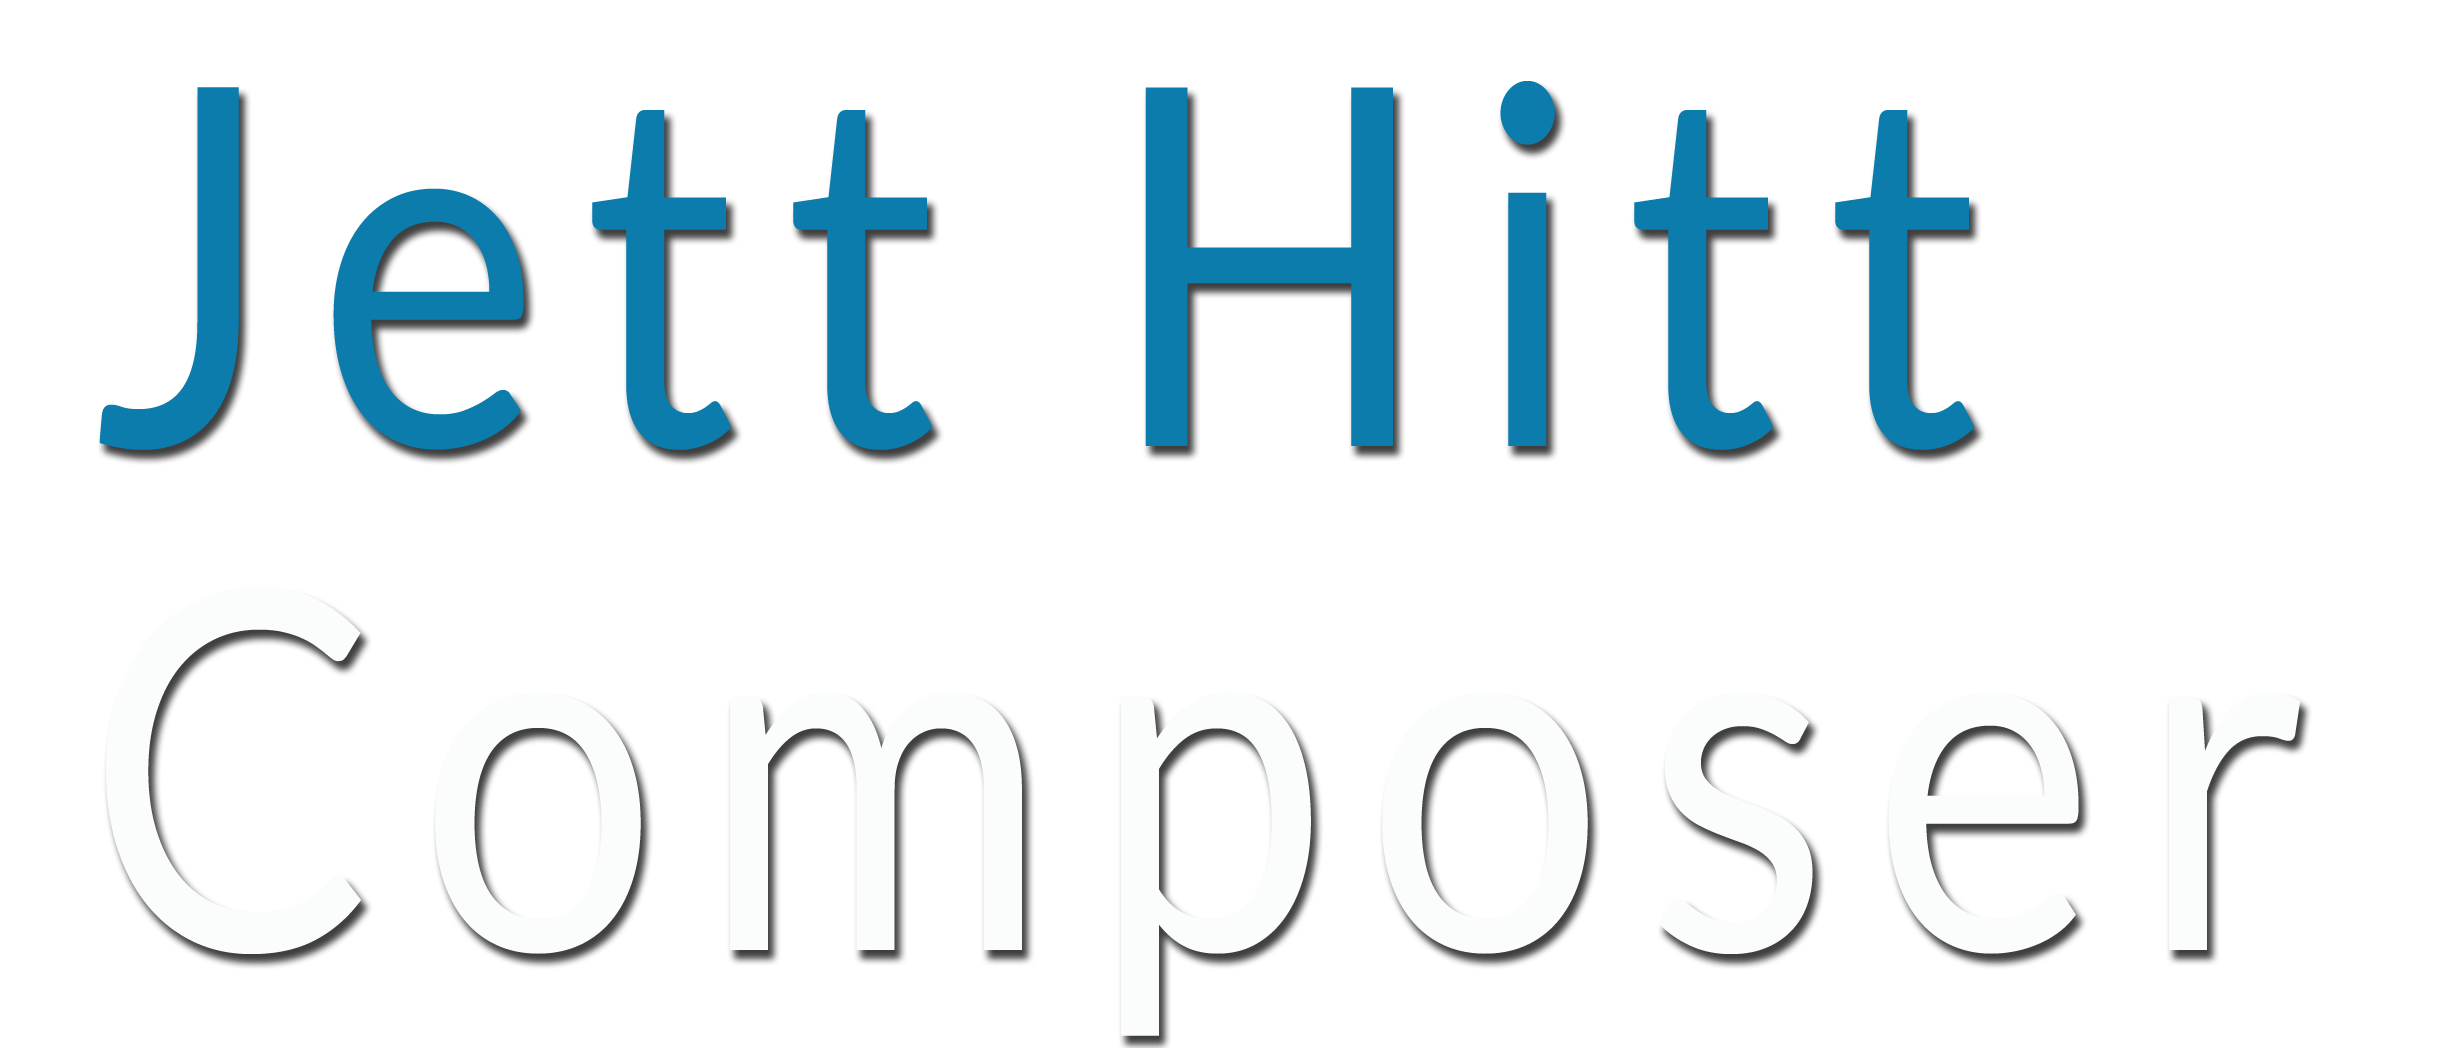 Jett Hitt - Composer Logo